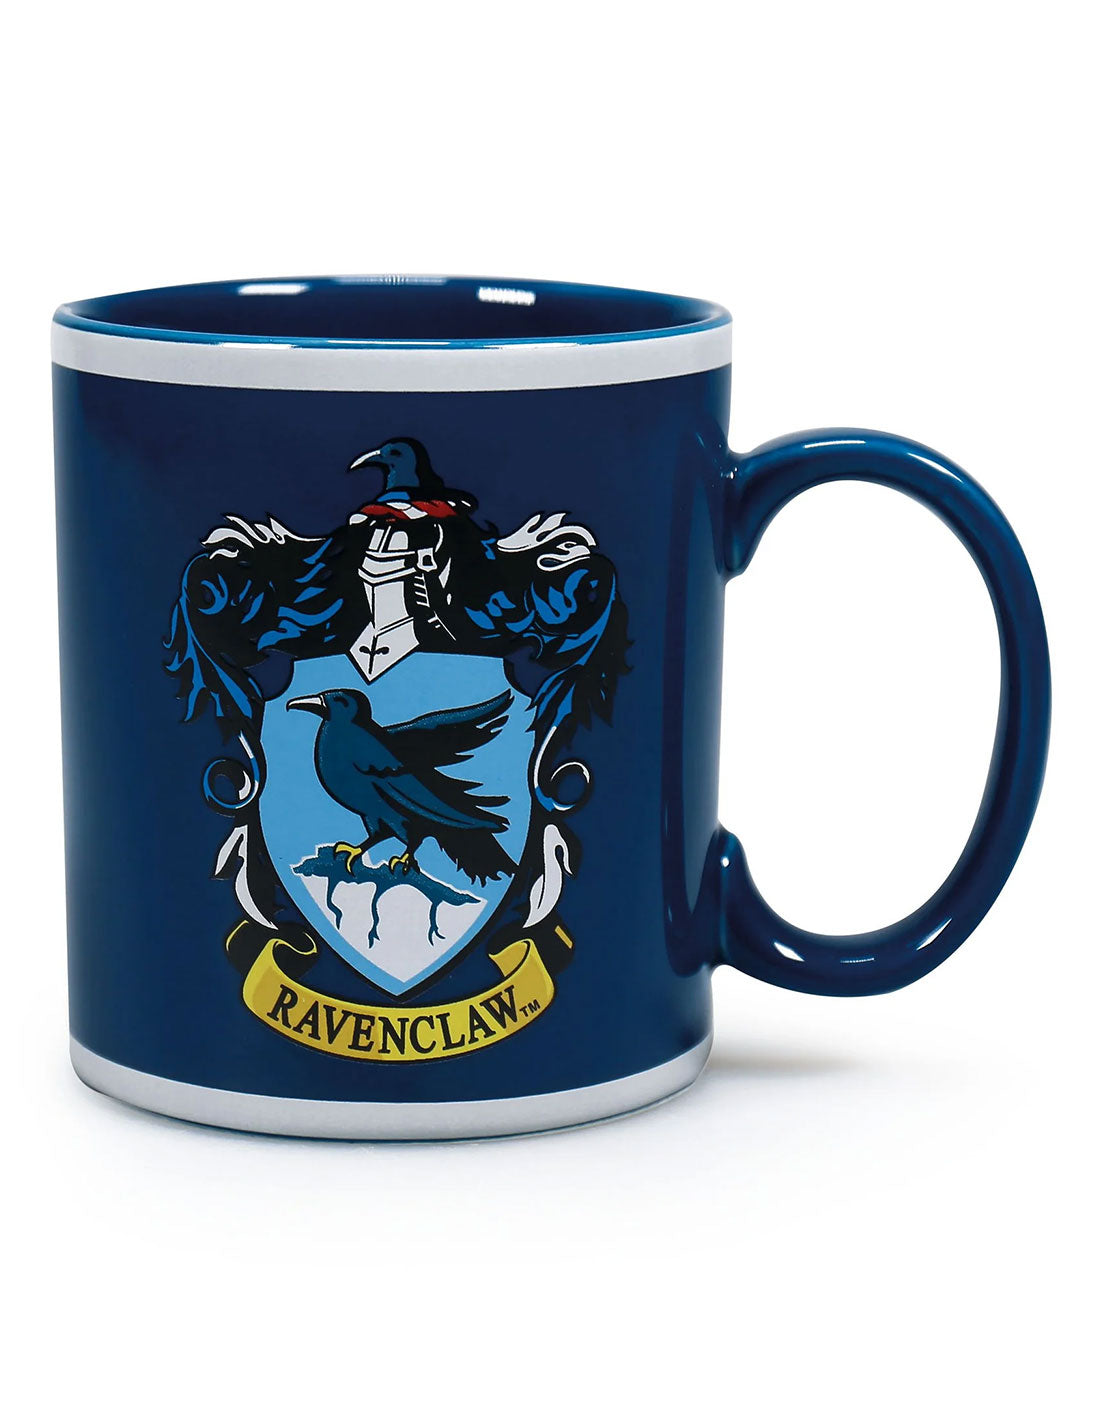 Harry Potter Mug - Ravenclaw Crest